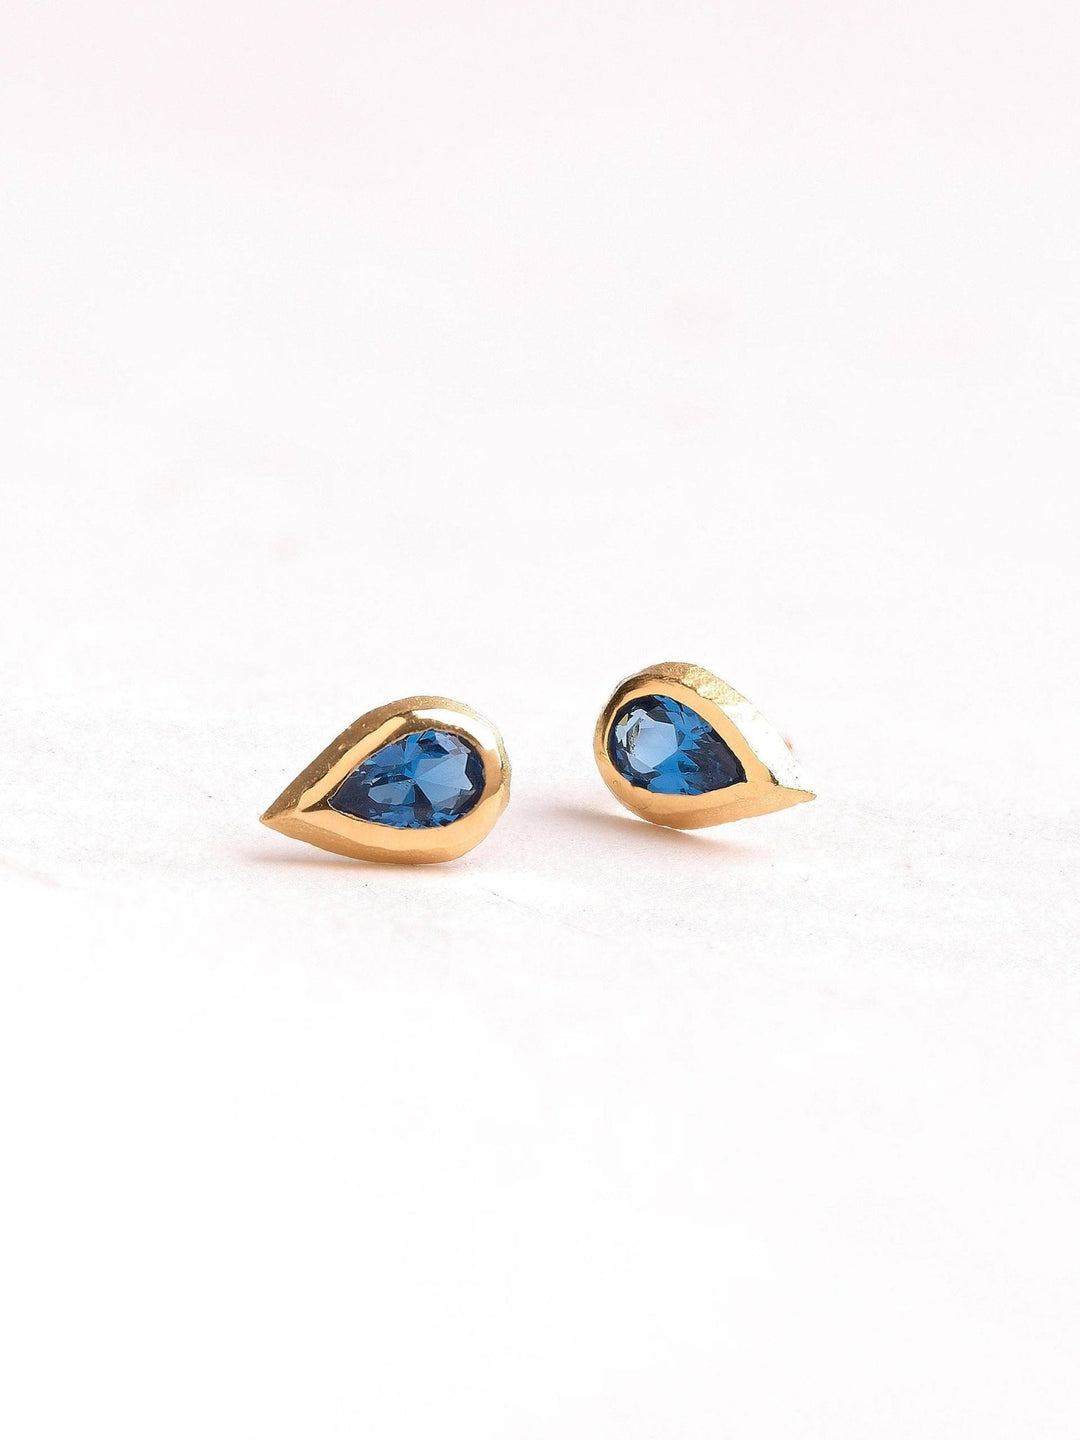 Tery Pink Tourmaline Stud Earrings - Blue Topazcitrine earringscool earringsLunai Jewelry